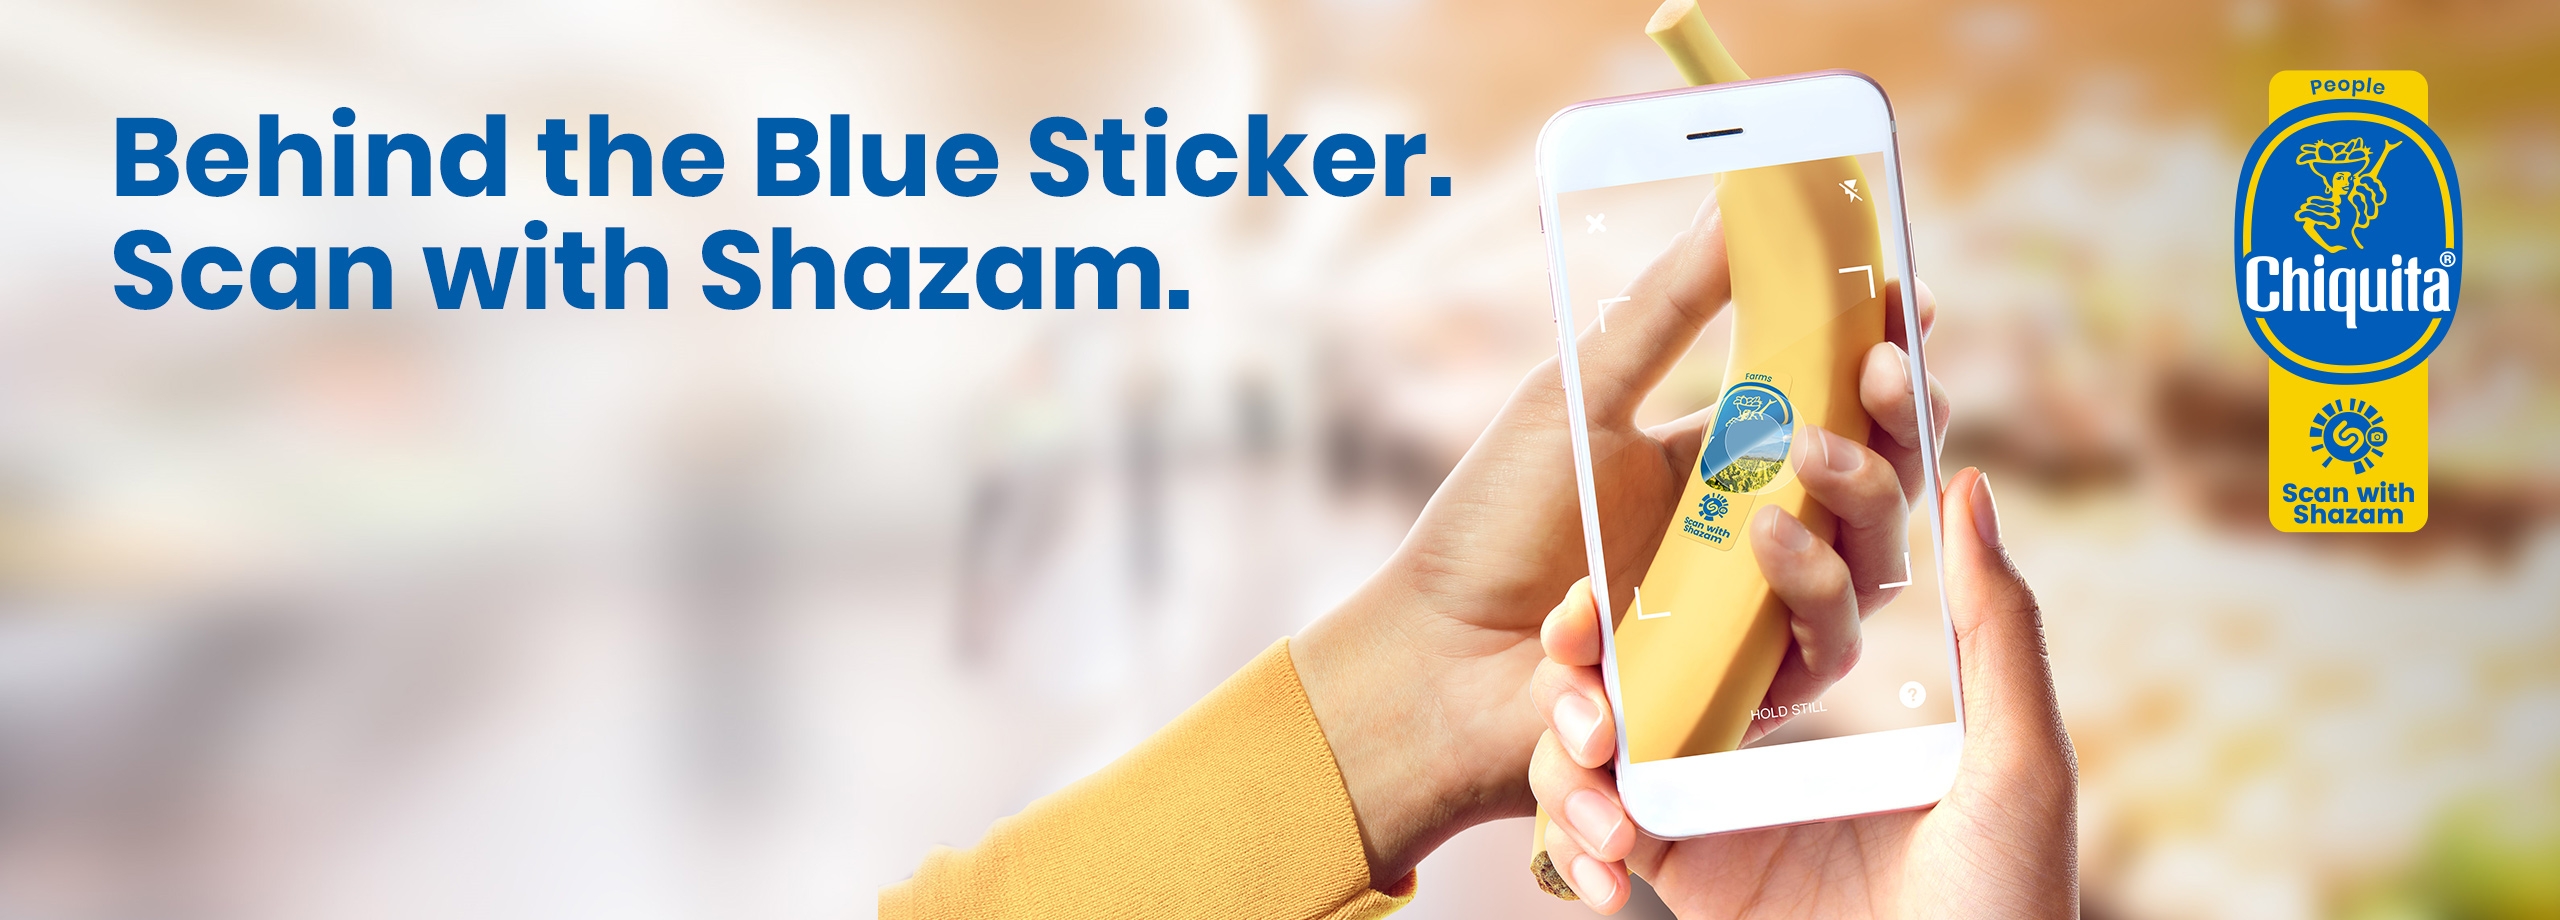 Shazam blue sticker